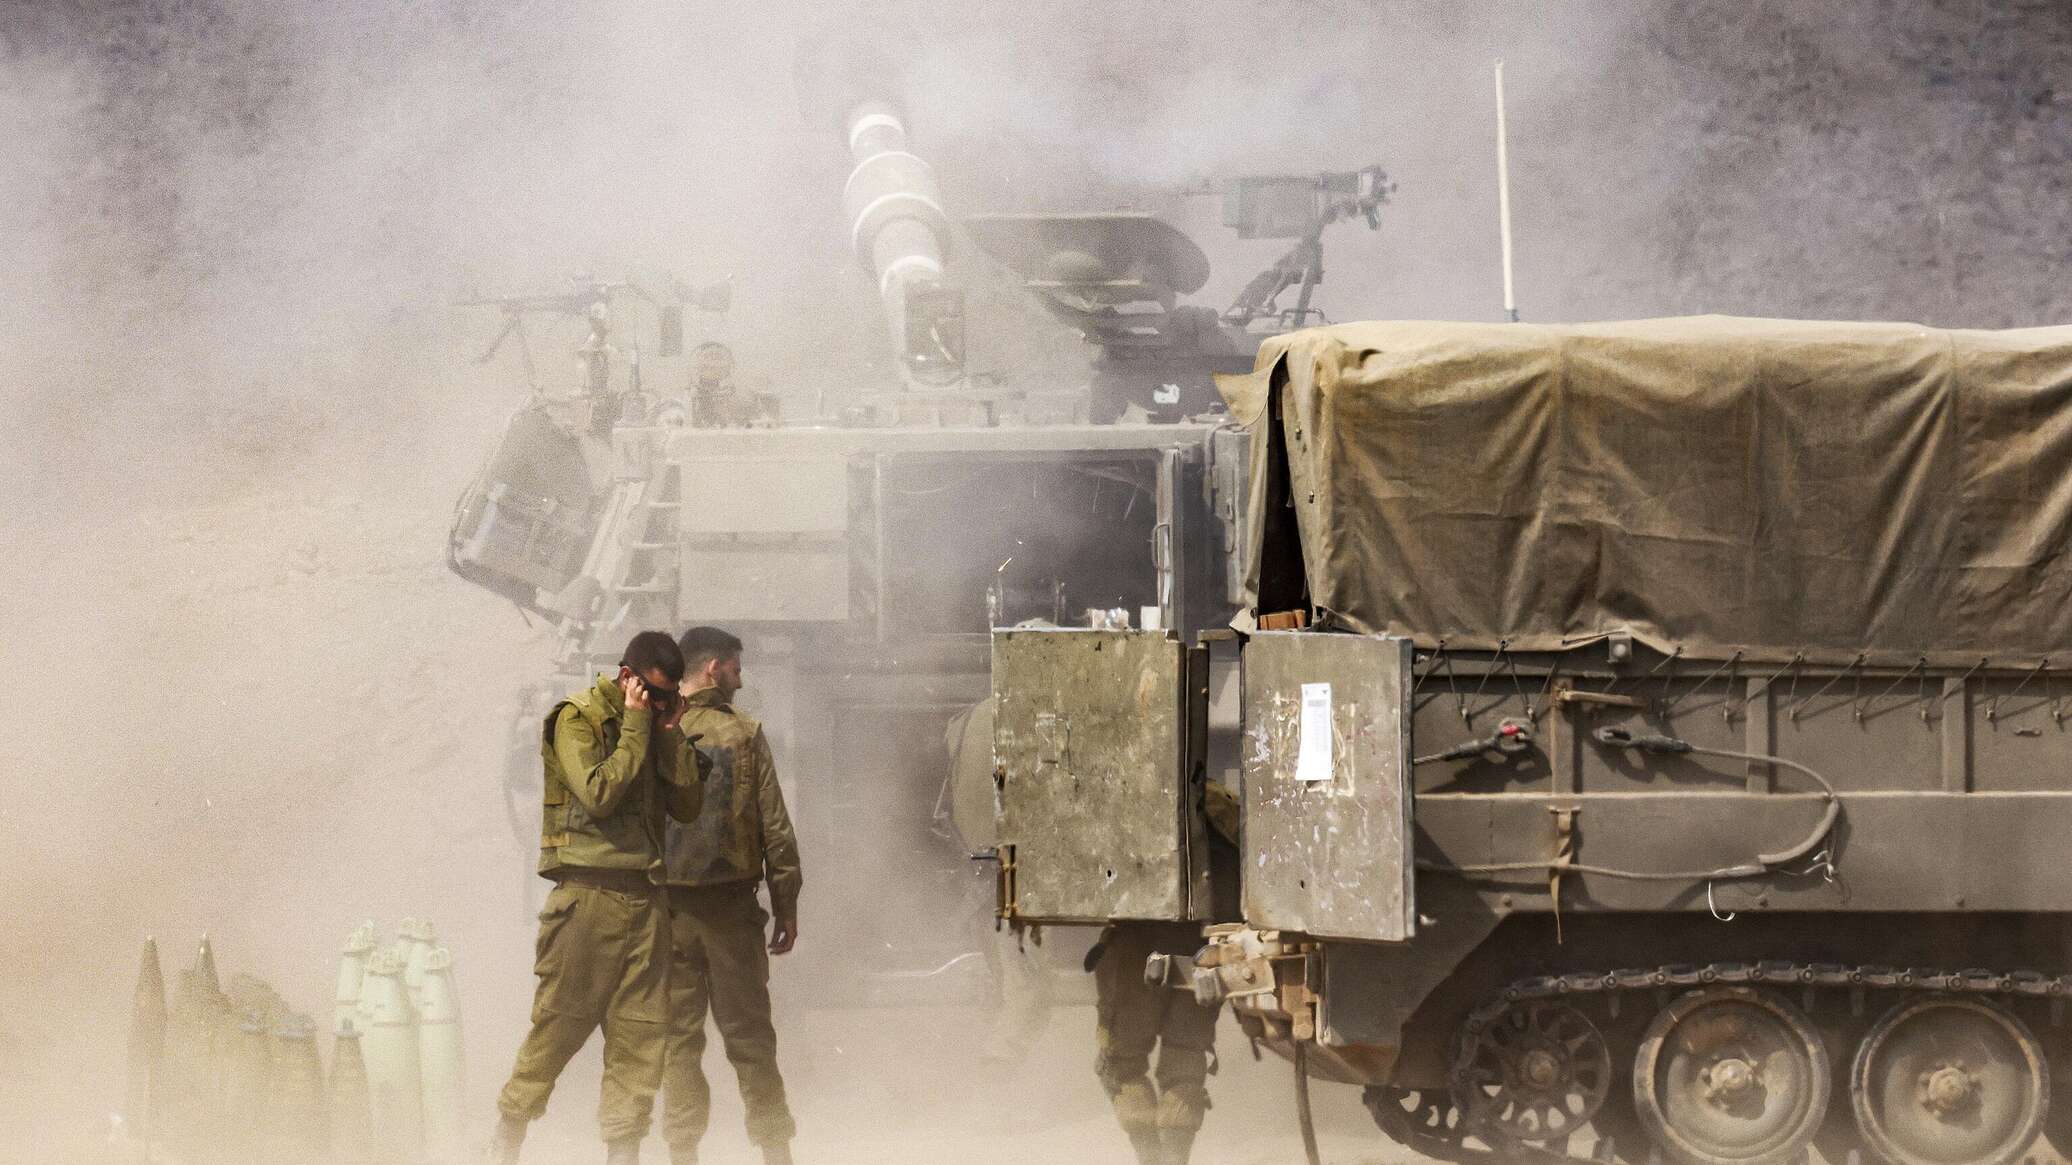 الجيش الإسرائيلي يعلن تدمير 150 هدفا تحت الأرض في قطاع غزة